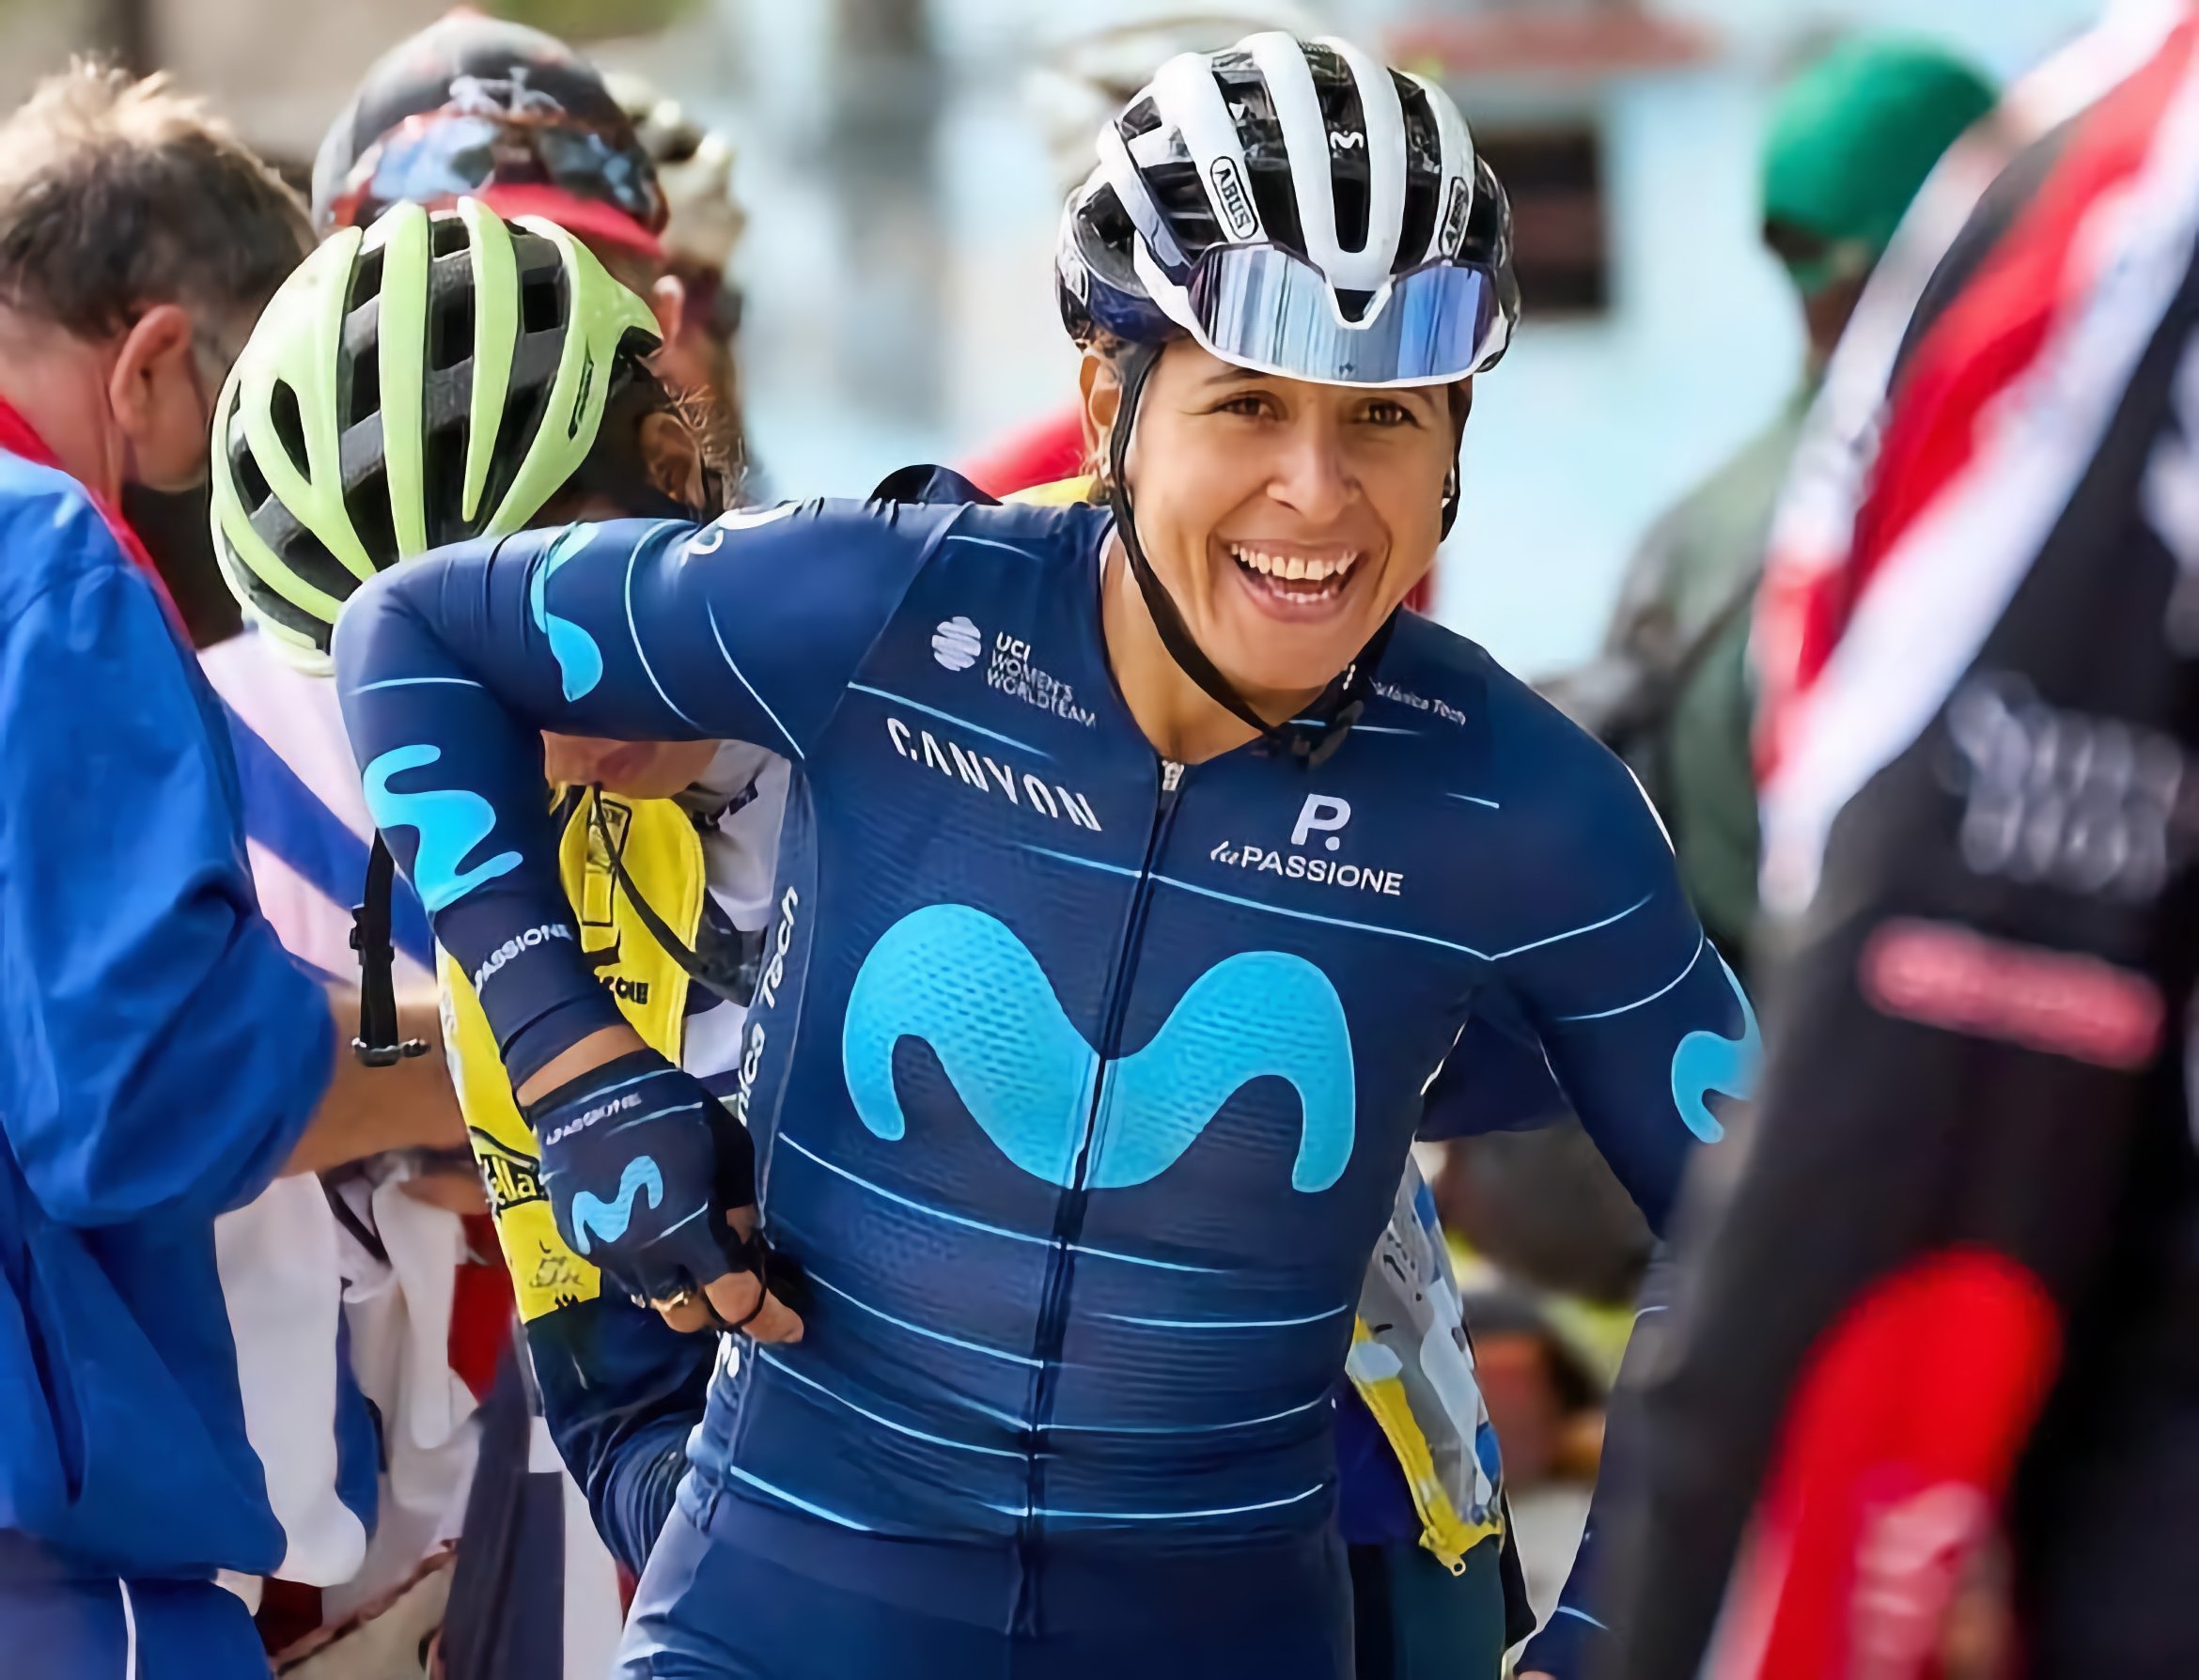 La ciclista cubana Arlenis Sierra se ha convertido en una de las figuras más destacadas dentro del equipo Movistar. Foto: movistarteam.com.